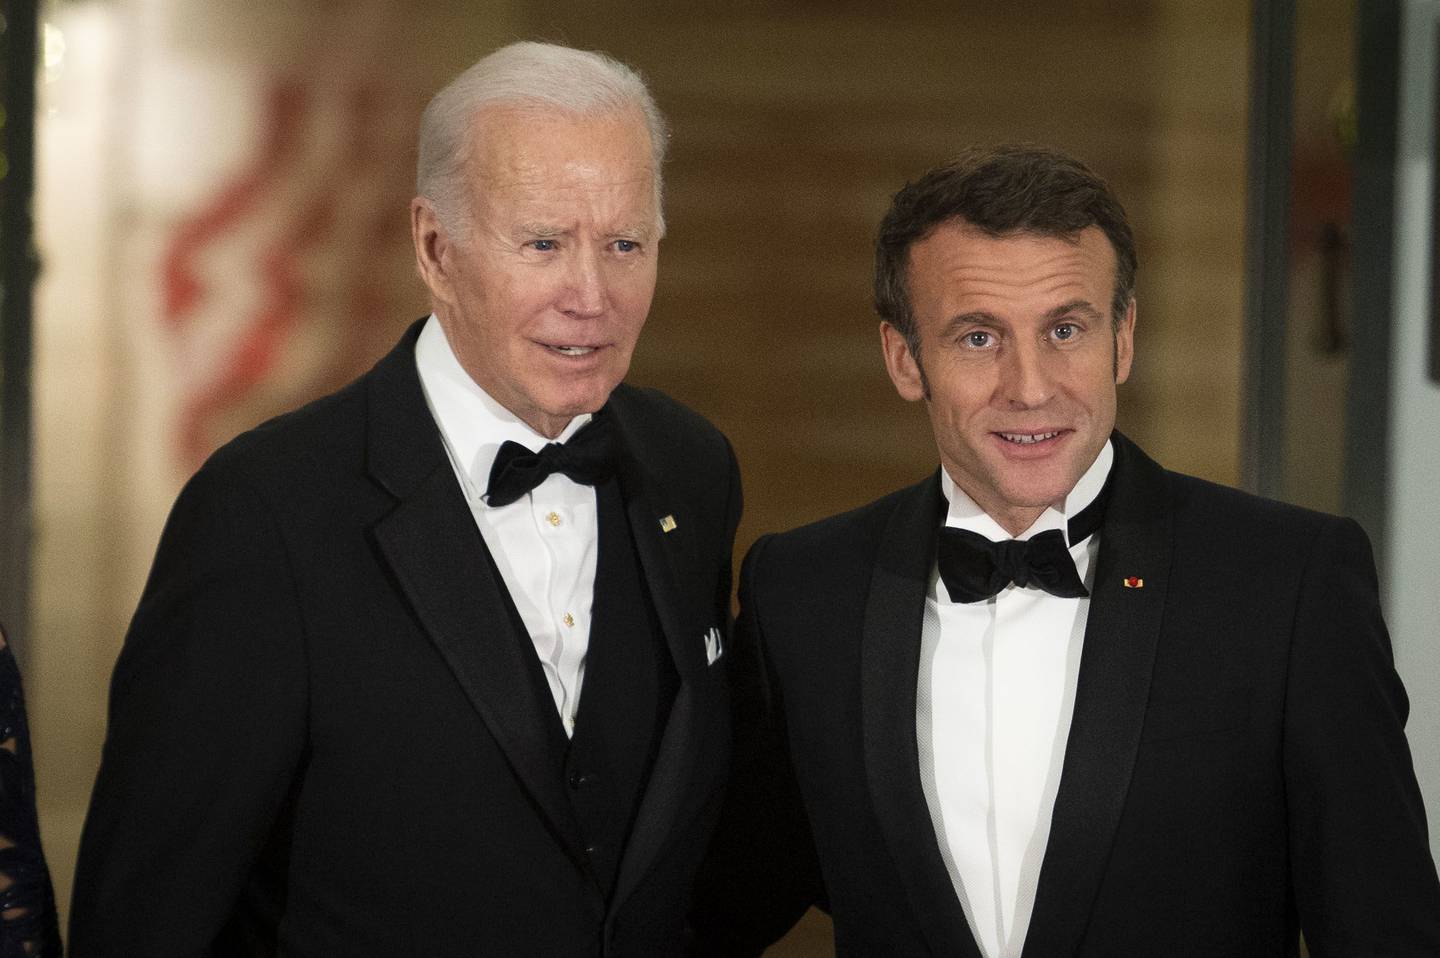 El presidente de EE.UU., Joe Biden, izquierda, y Emmanuel Macron, presidente de Francia, durante una llegada al Pórtico Norte de la Casa Blanca antes de una cena de Estado en Washington, DC, EEUU, el jueves 1 de diciembre de 2022.